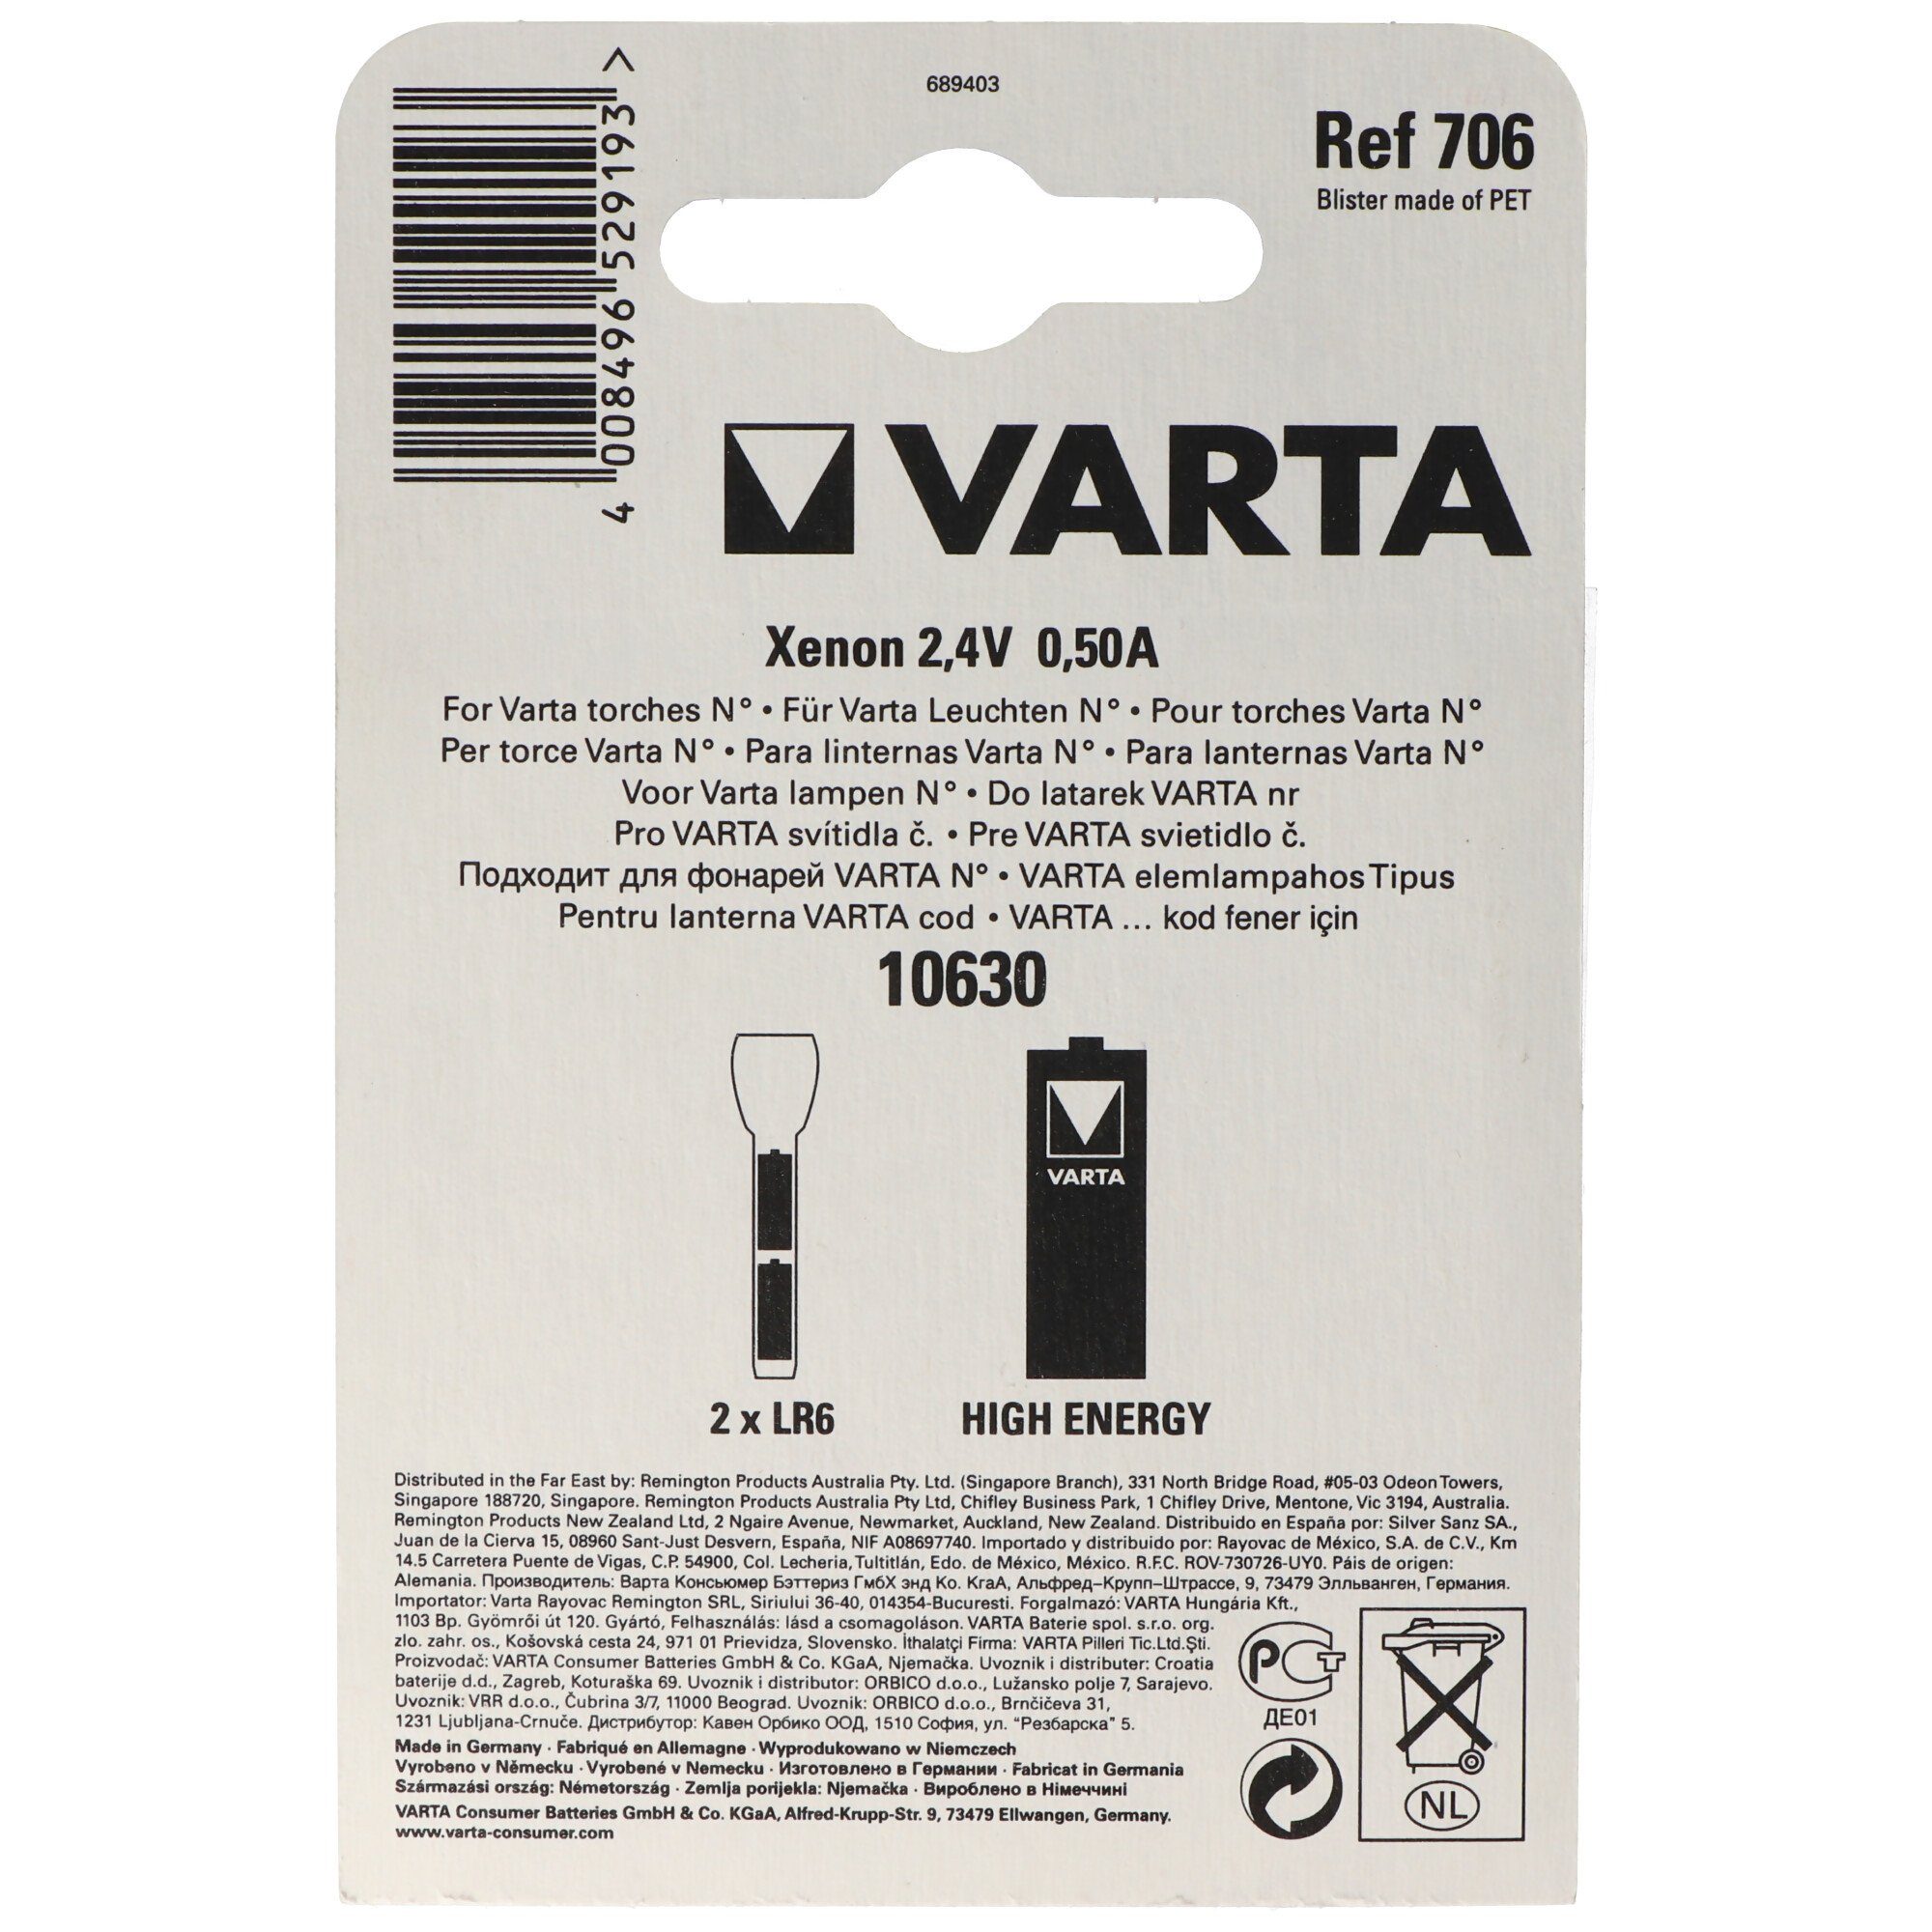 VARTA LED Taschenlampe Varta 706, 00706000402 Ersatzbirnchen Varta